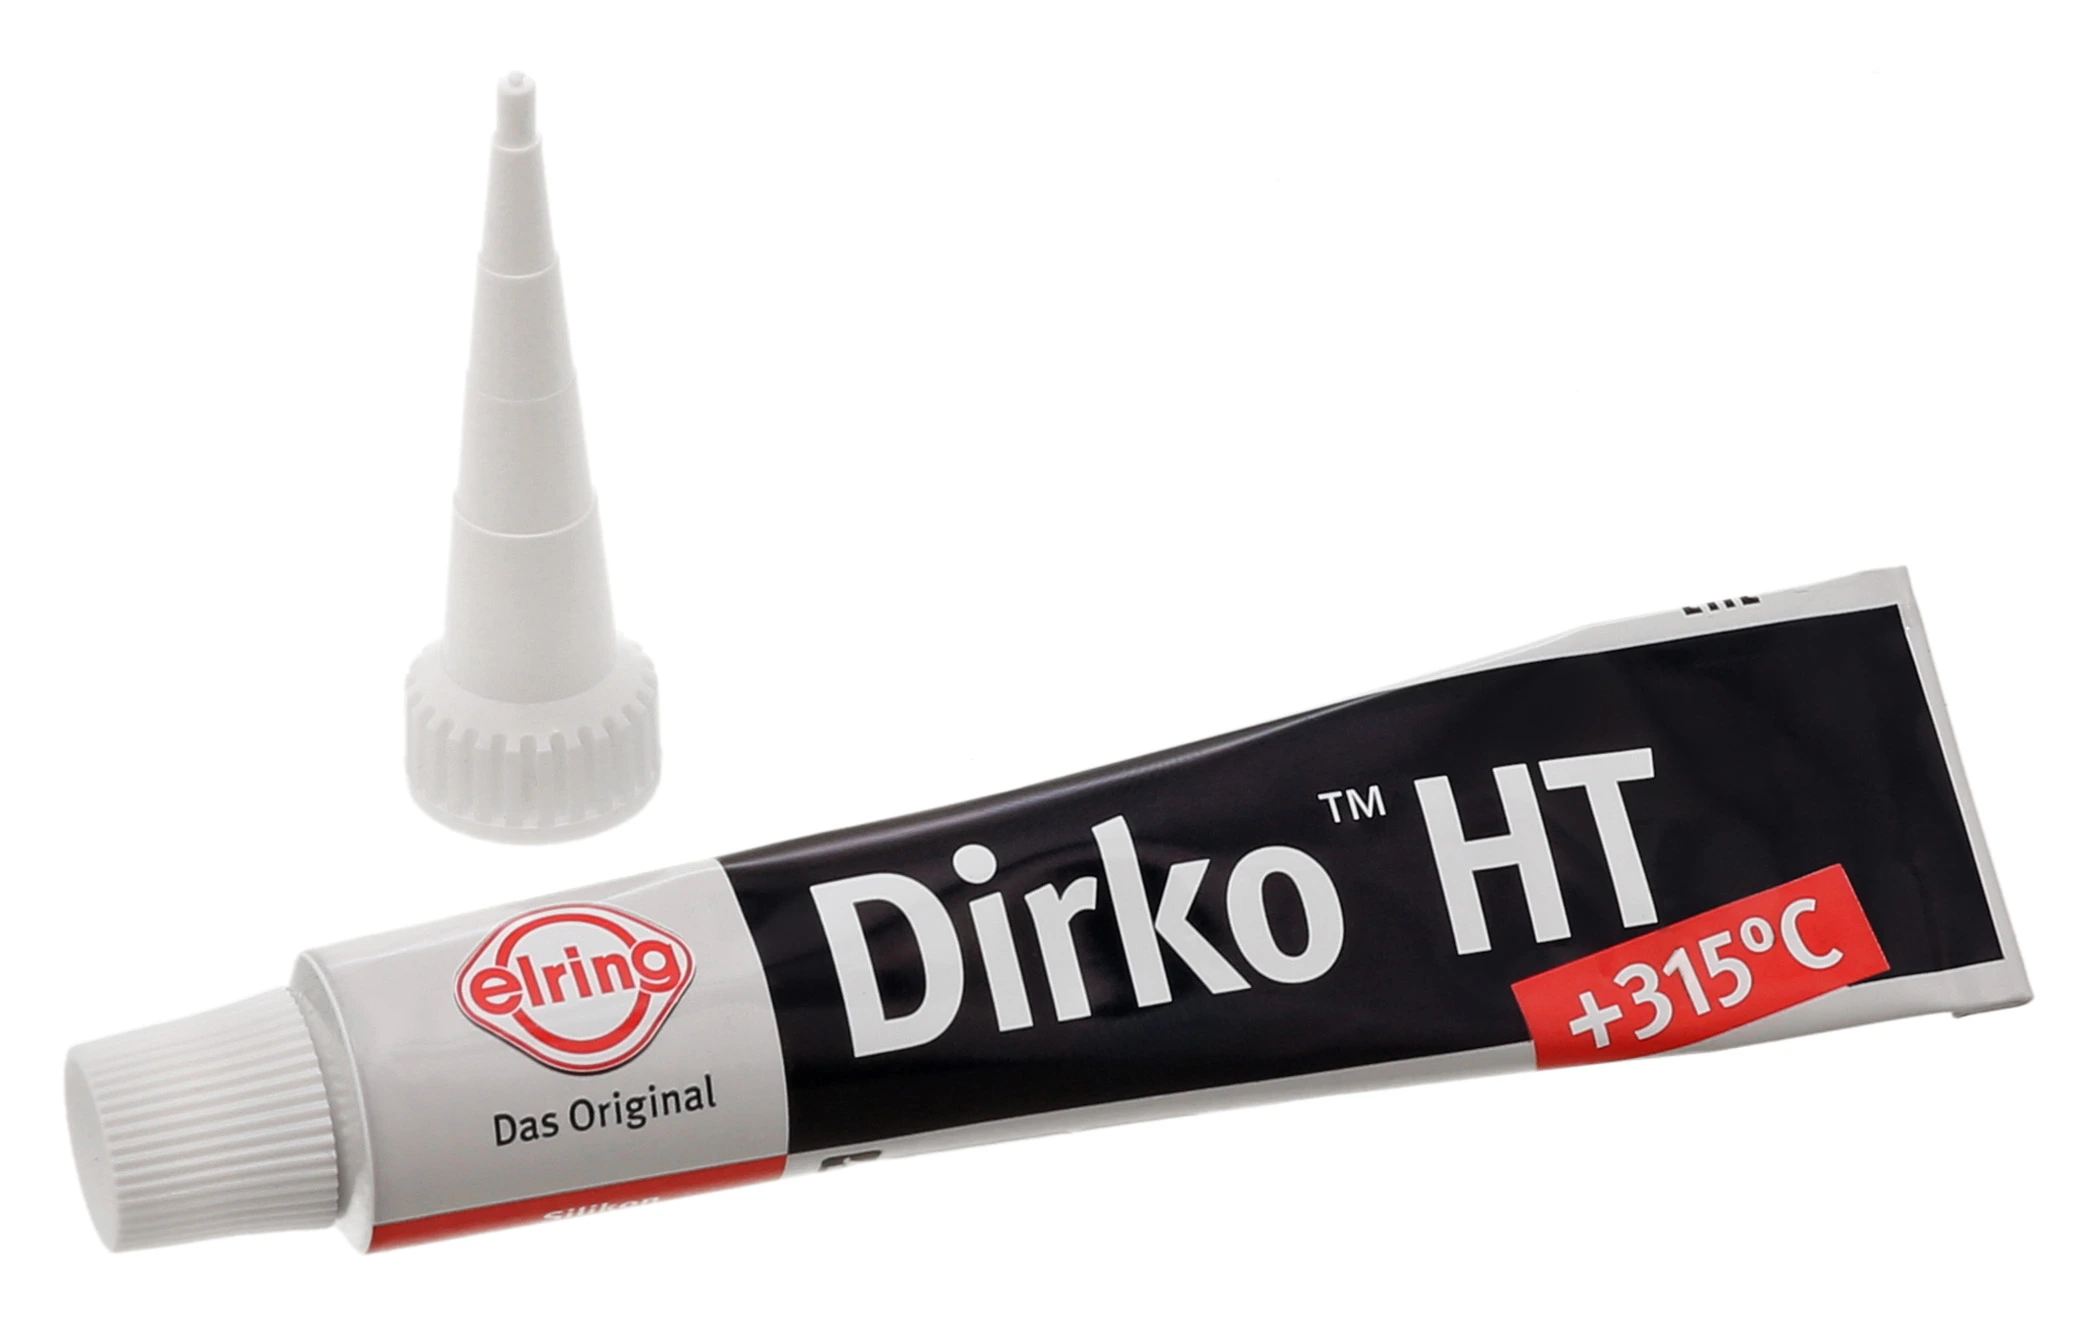 Dichtmassen/DIRKO-S Profipress, Dirko S HT